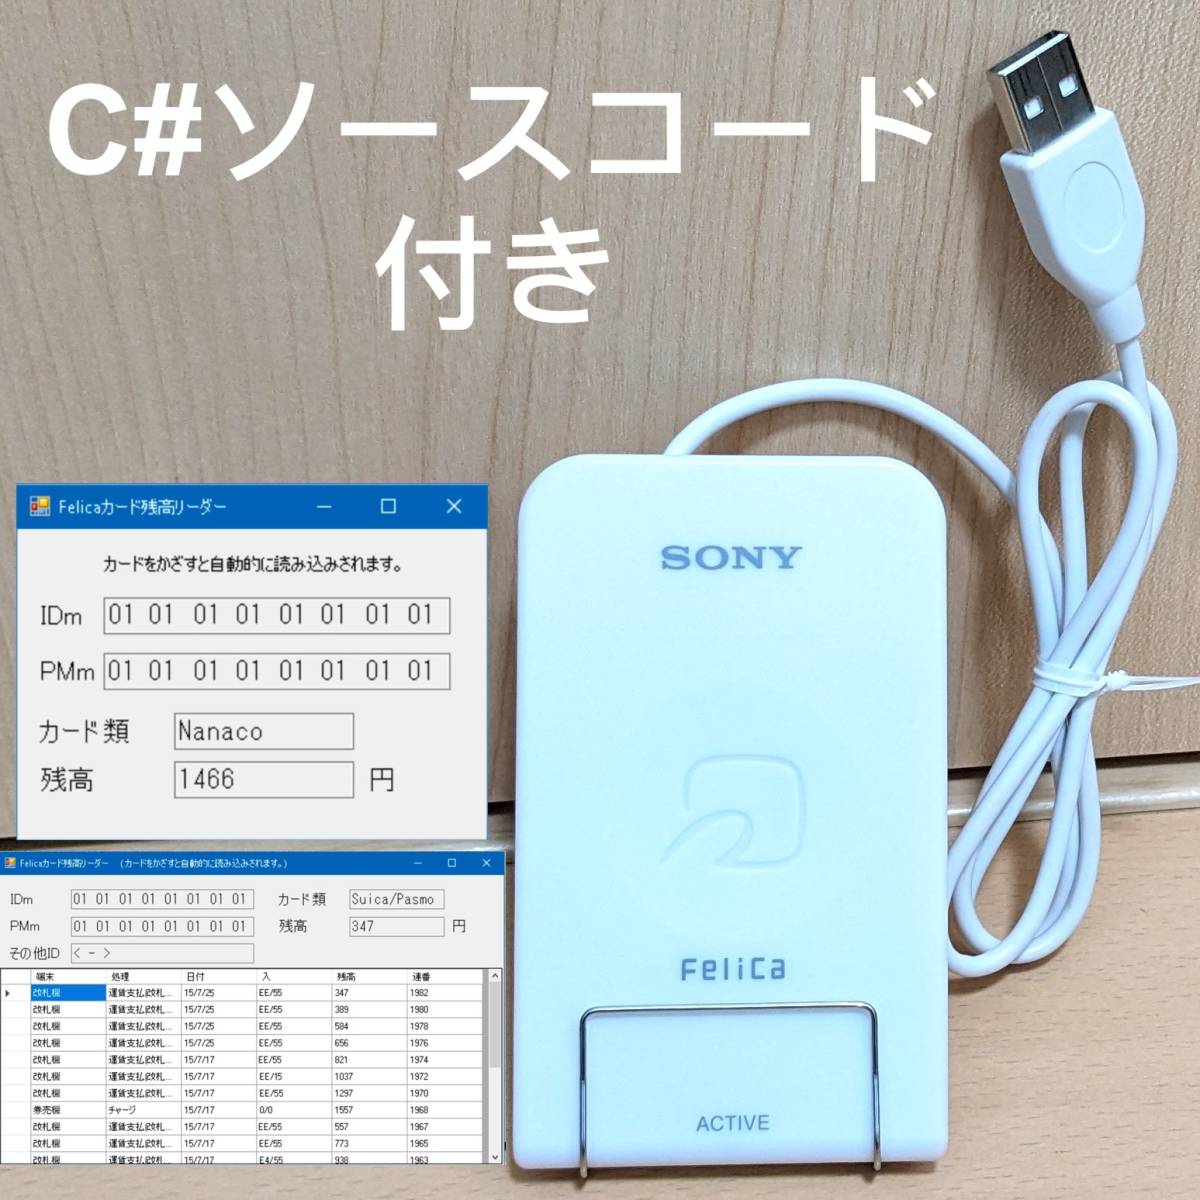 RC-S320 C# соус код имеется FeliCa Leader * зажигалка USB модель SONY Sony 3